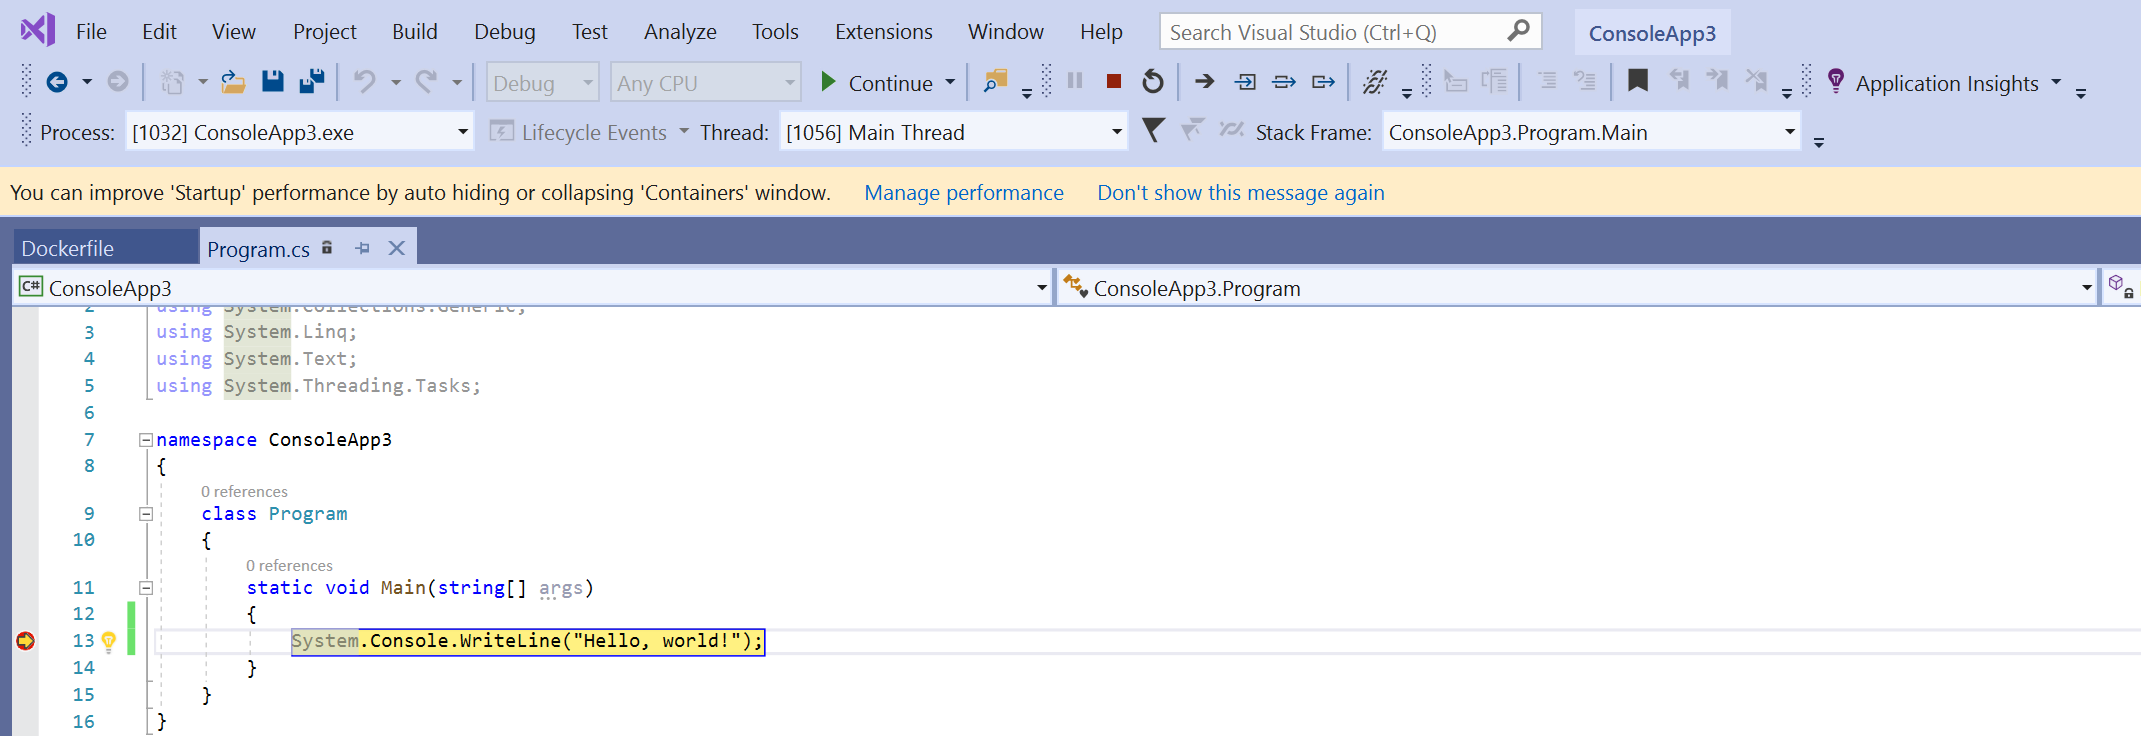 Captura de pantalla de la ventana de código para Program.cs en Visual Studio con un punto de interrupción establecido a la izquierda de una línea de código que está resaltada en amarillo.